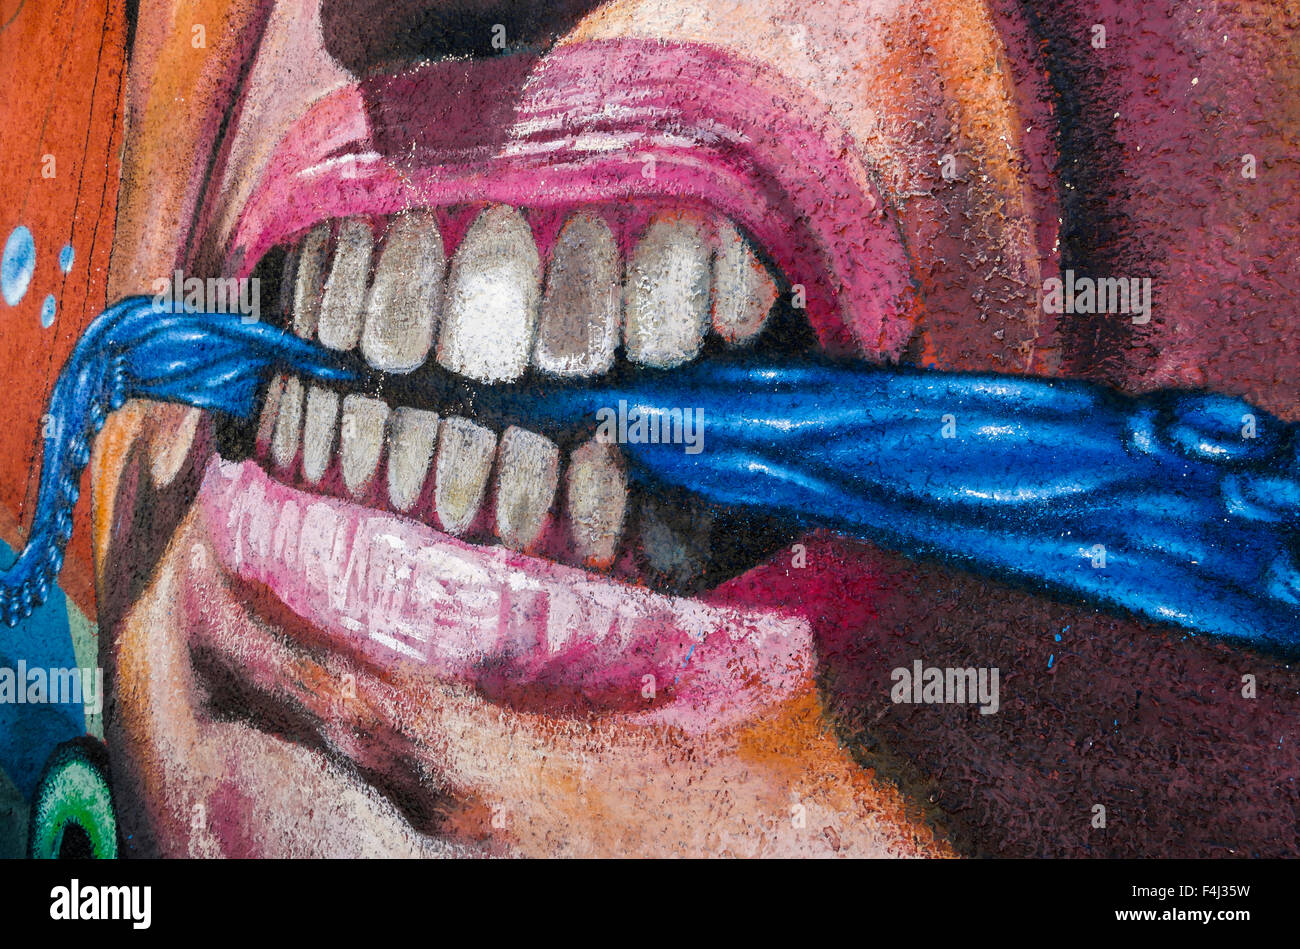 VALPARAISO, CHILE - 29. Oktober 2014: Bunte Graffiti Detail ein aggressives Gesicht mit Schal zwischen den Zähnen in Valparaiso Stockfoto